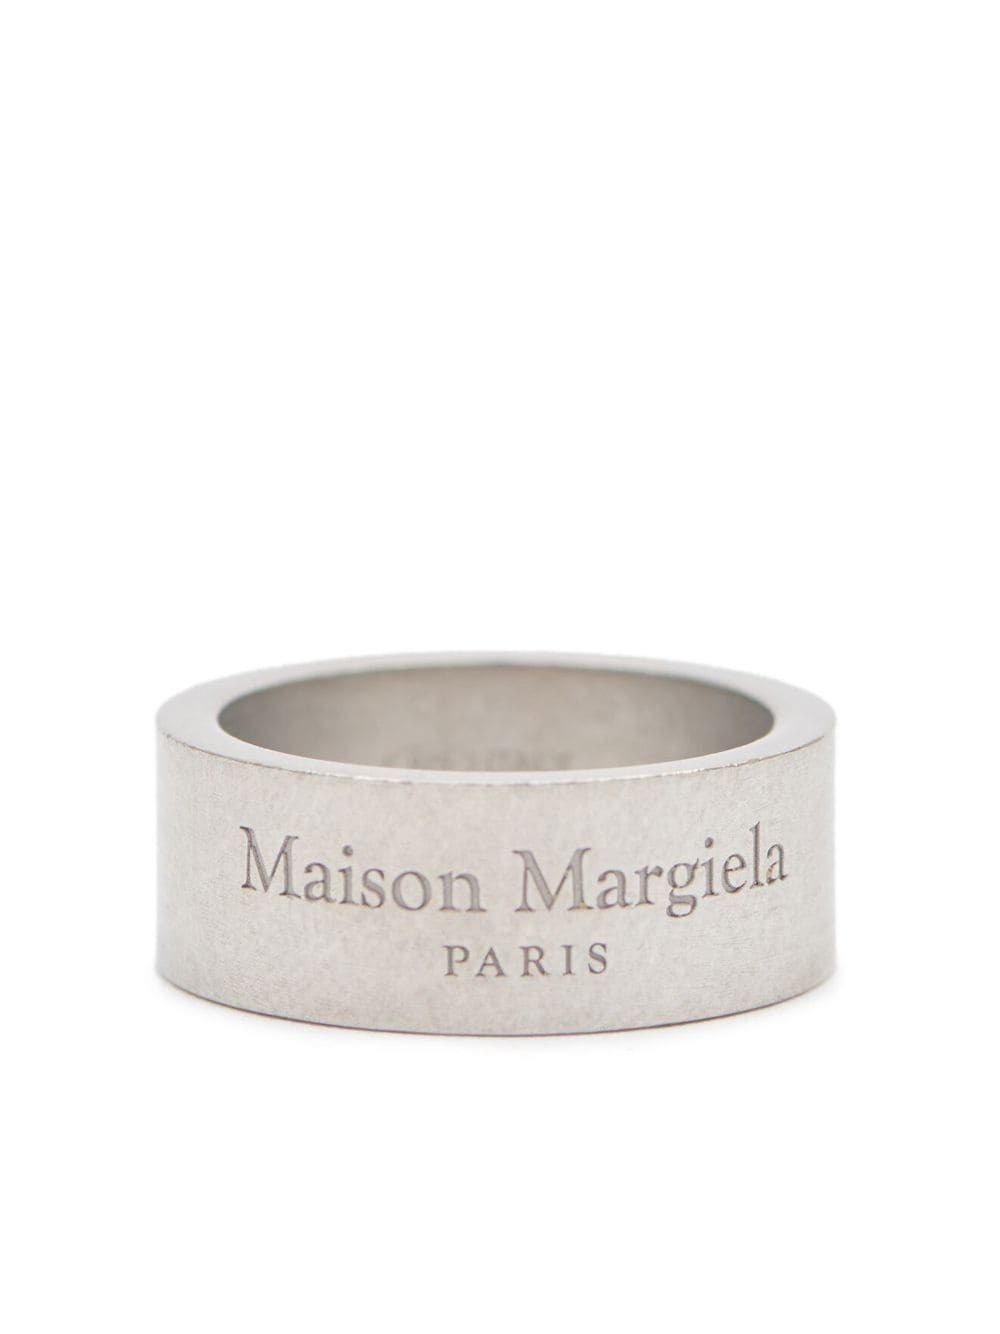 MAISON MARGIELA - Ring With Engraved Logo